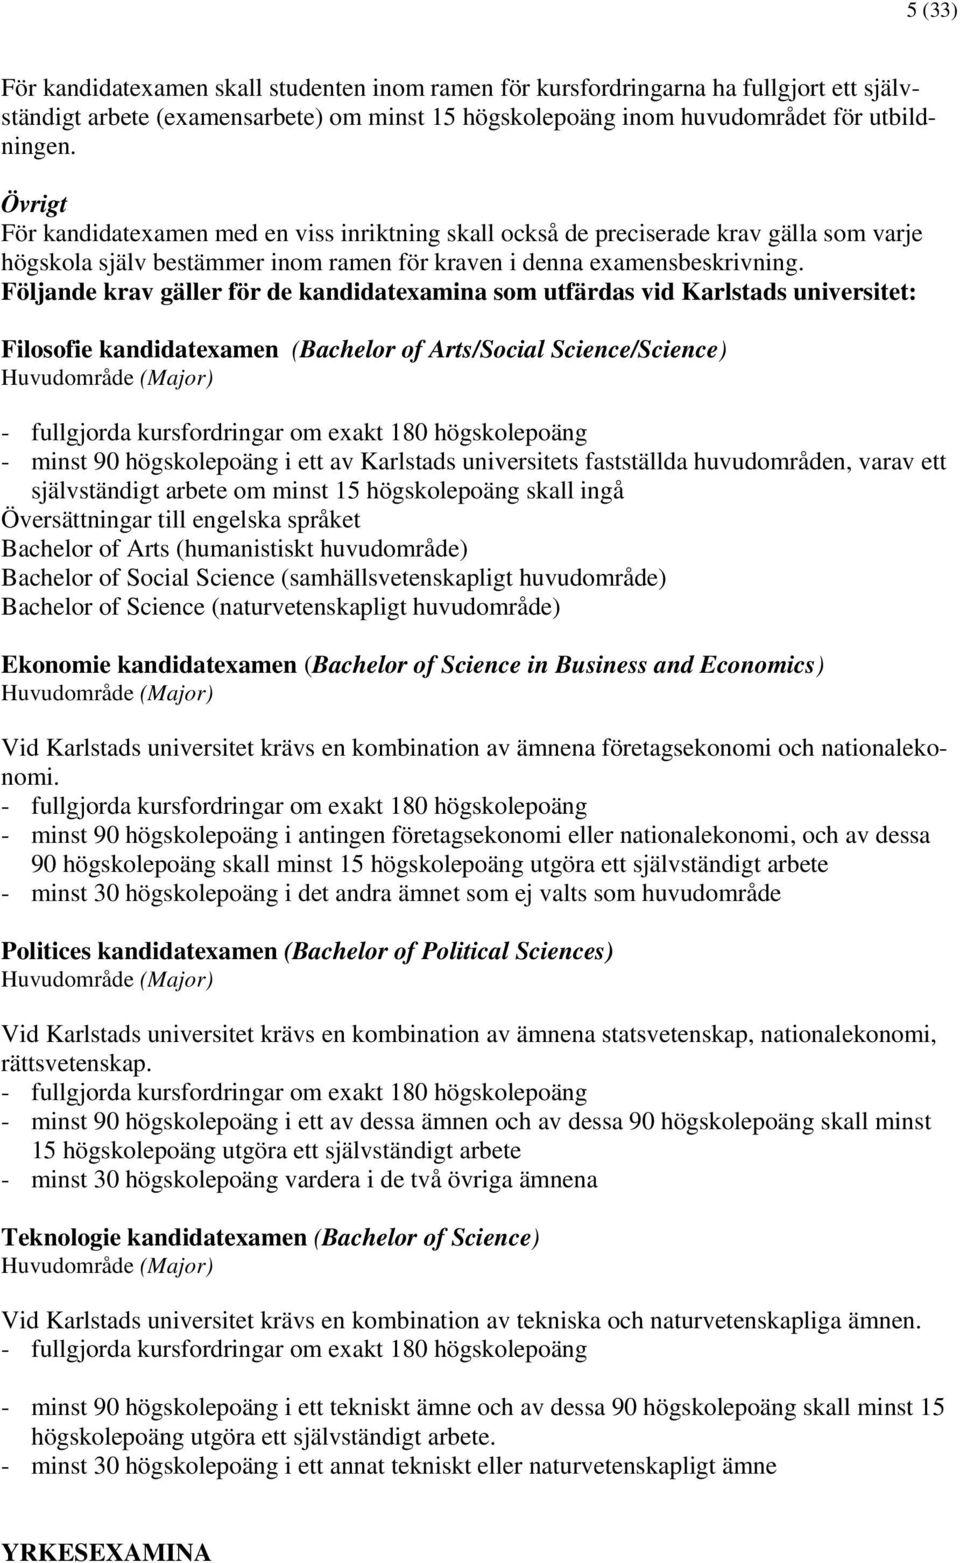 Följande krav gäller för de kandidatexamina som utfärdas vid Karlstads universitet: Filosofie kandidatexamen (Bachelor of Arts/Social Science/Science) Huvudområde (Major) - fullgjorda kursfordringar